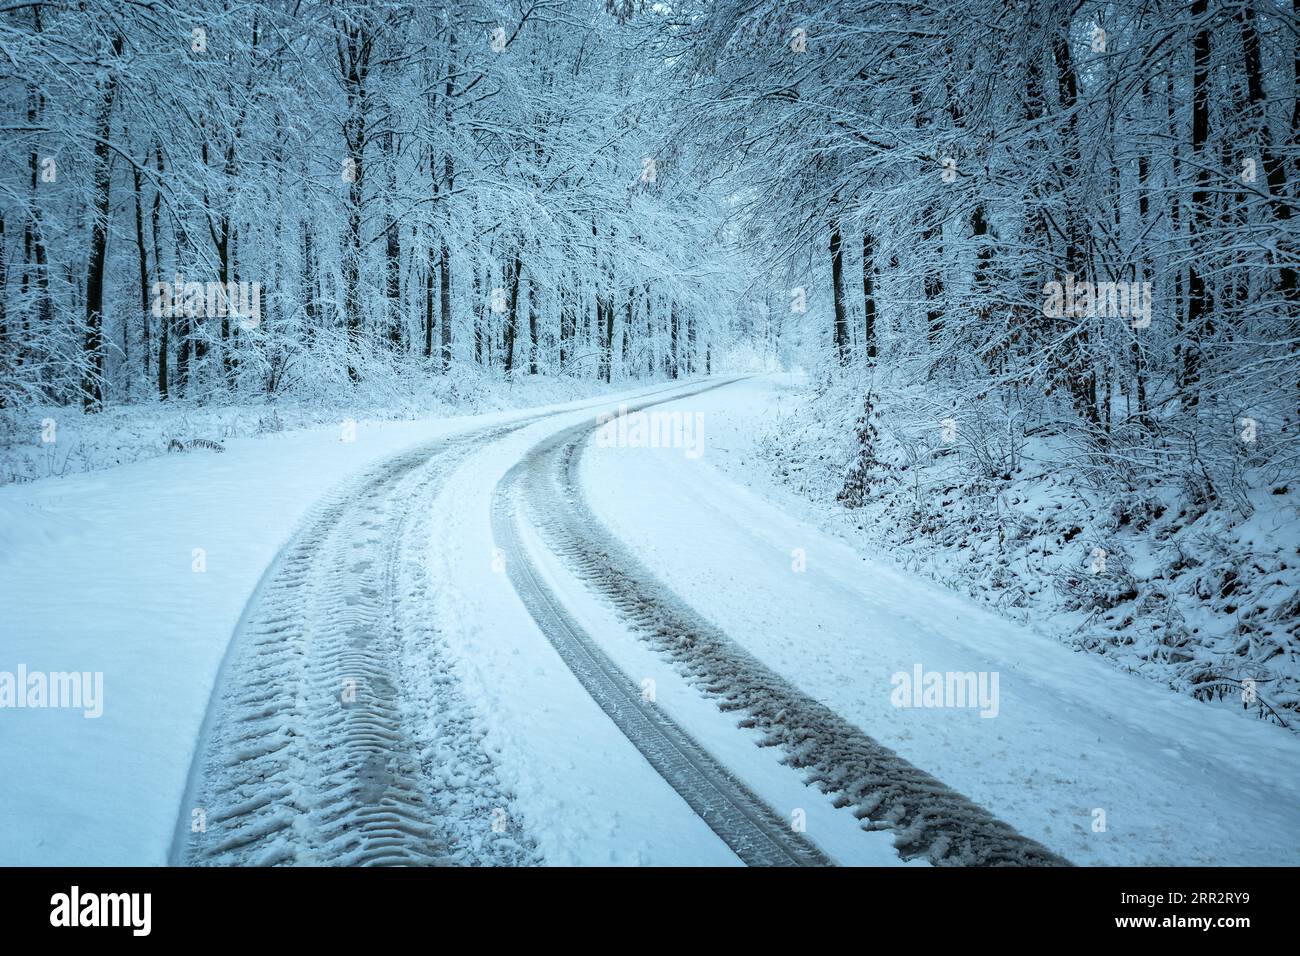 Pistes de roues sur une route enneigée dans la forêt d'hiver Banque D'Images